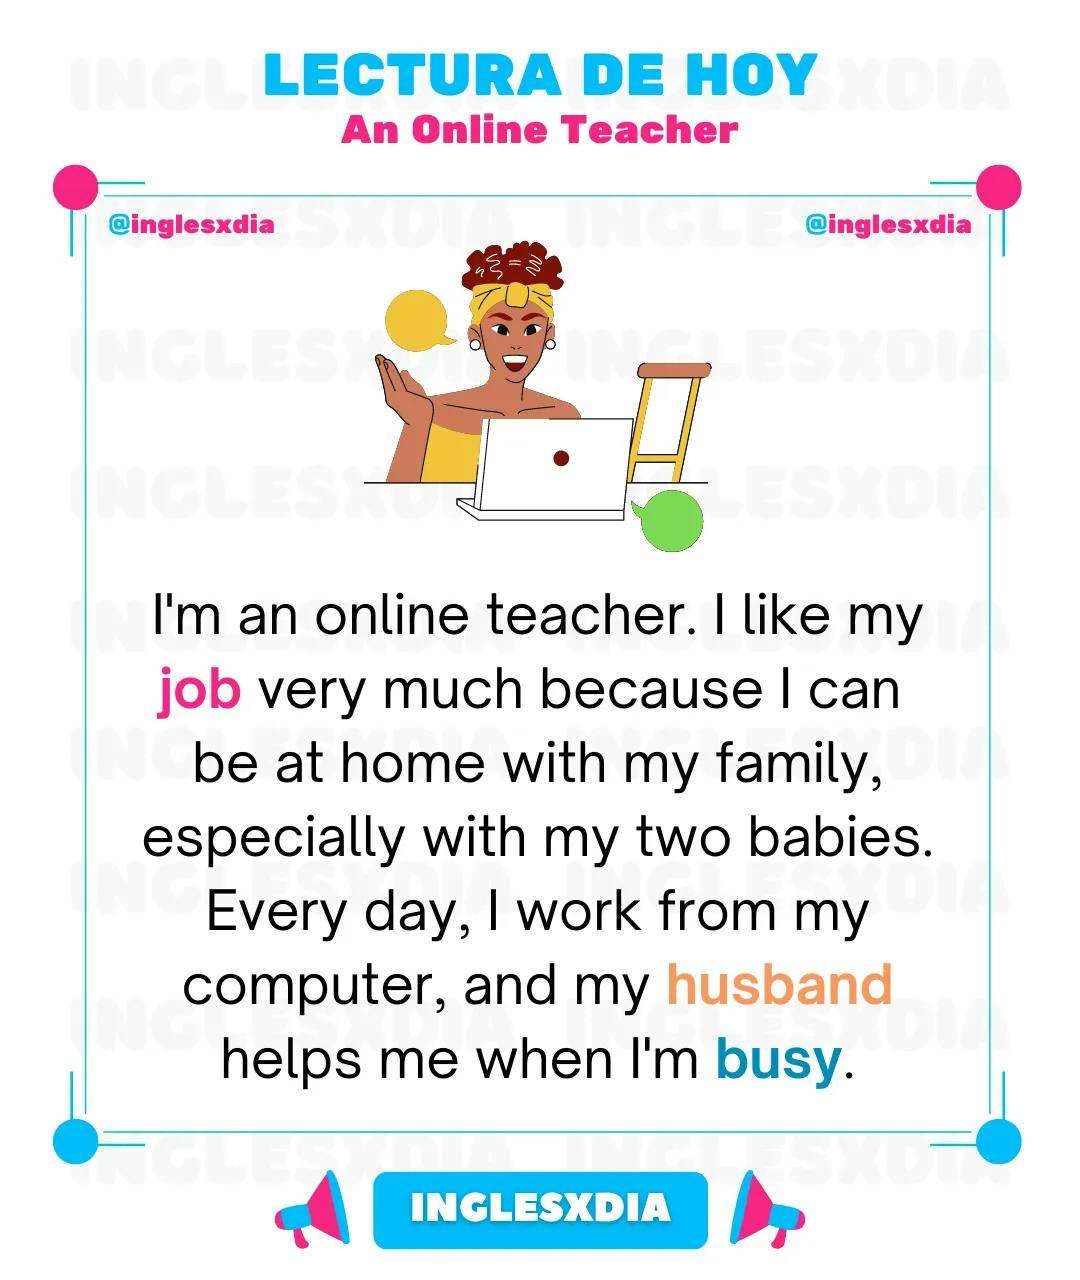 An Online Teacher